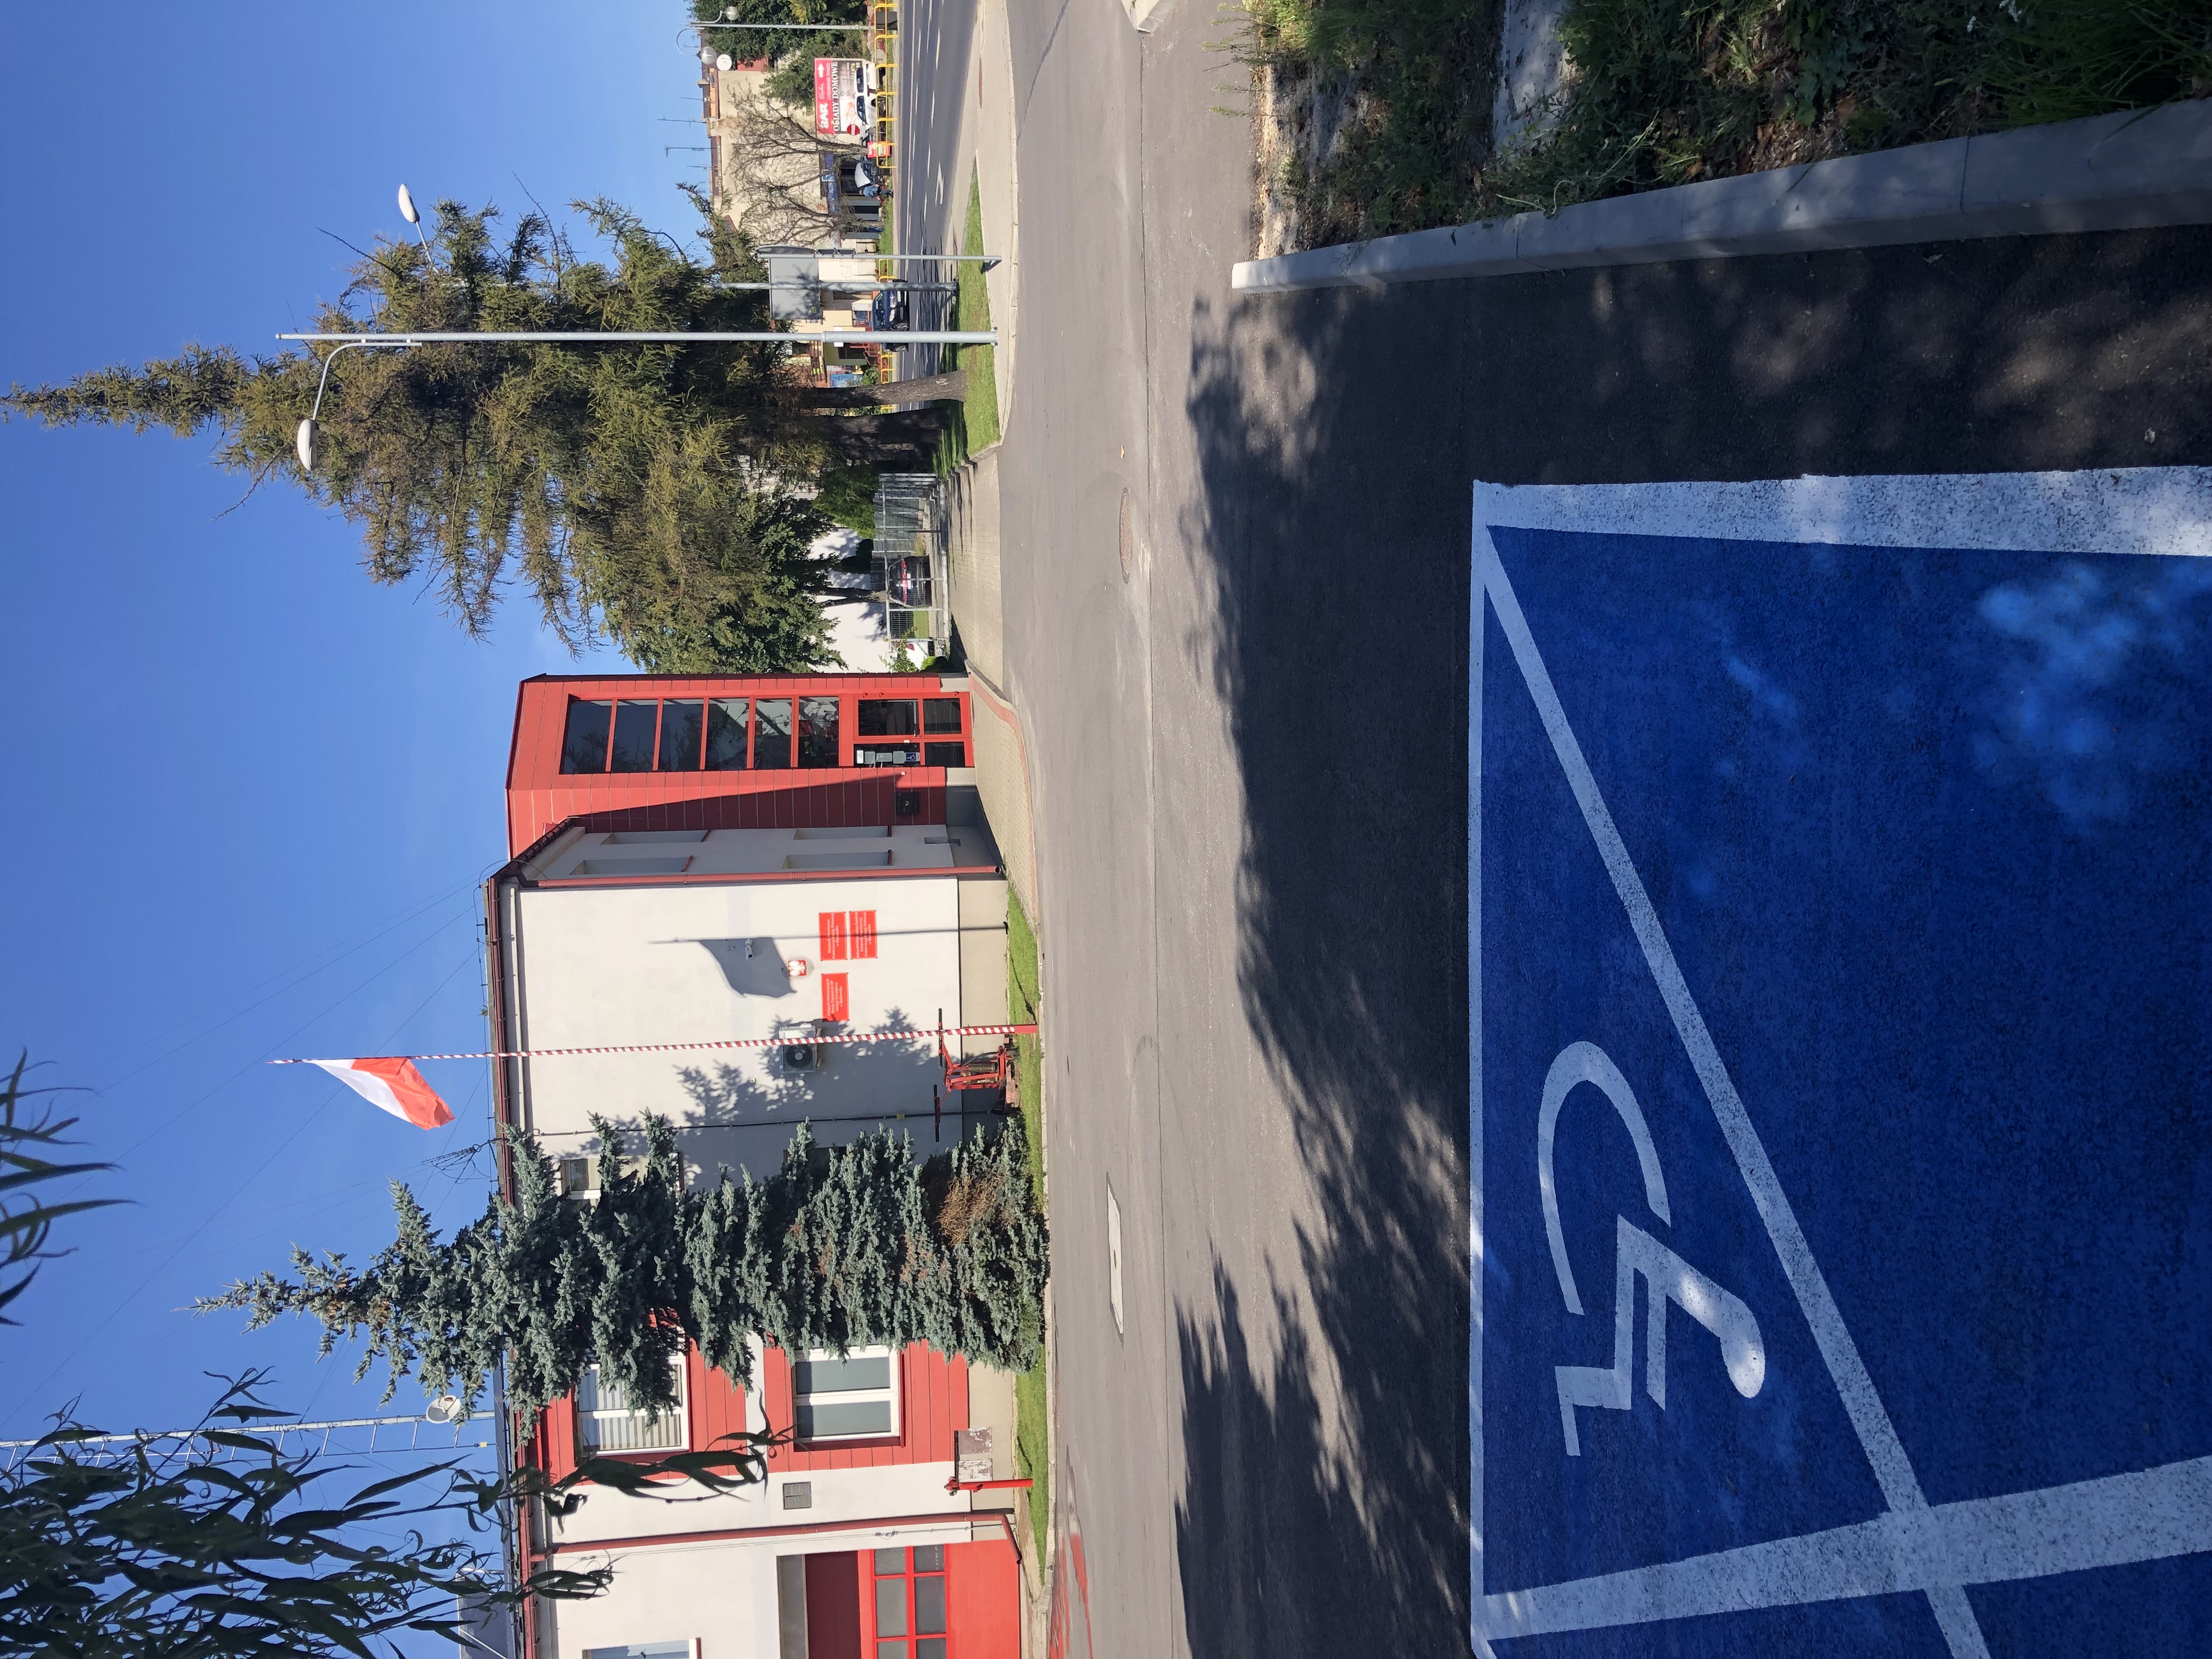 Parking z namalowanym na niebiesko miejscem postojowym dla osób z niepełnosprawnością. W tle budynek komendy szary z czerwonymi elementami.